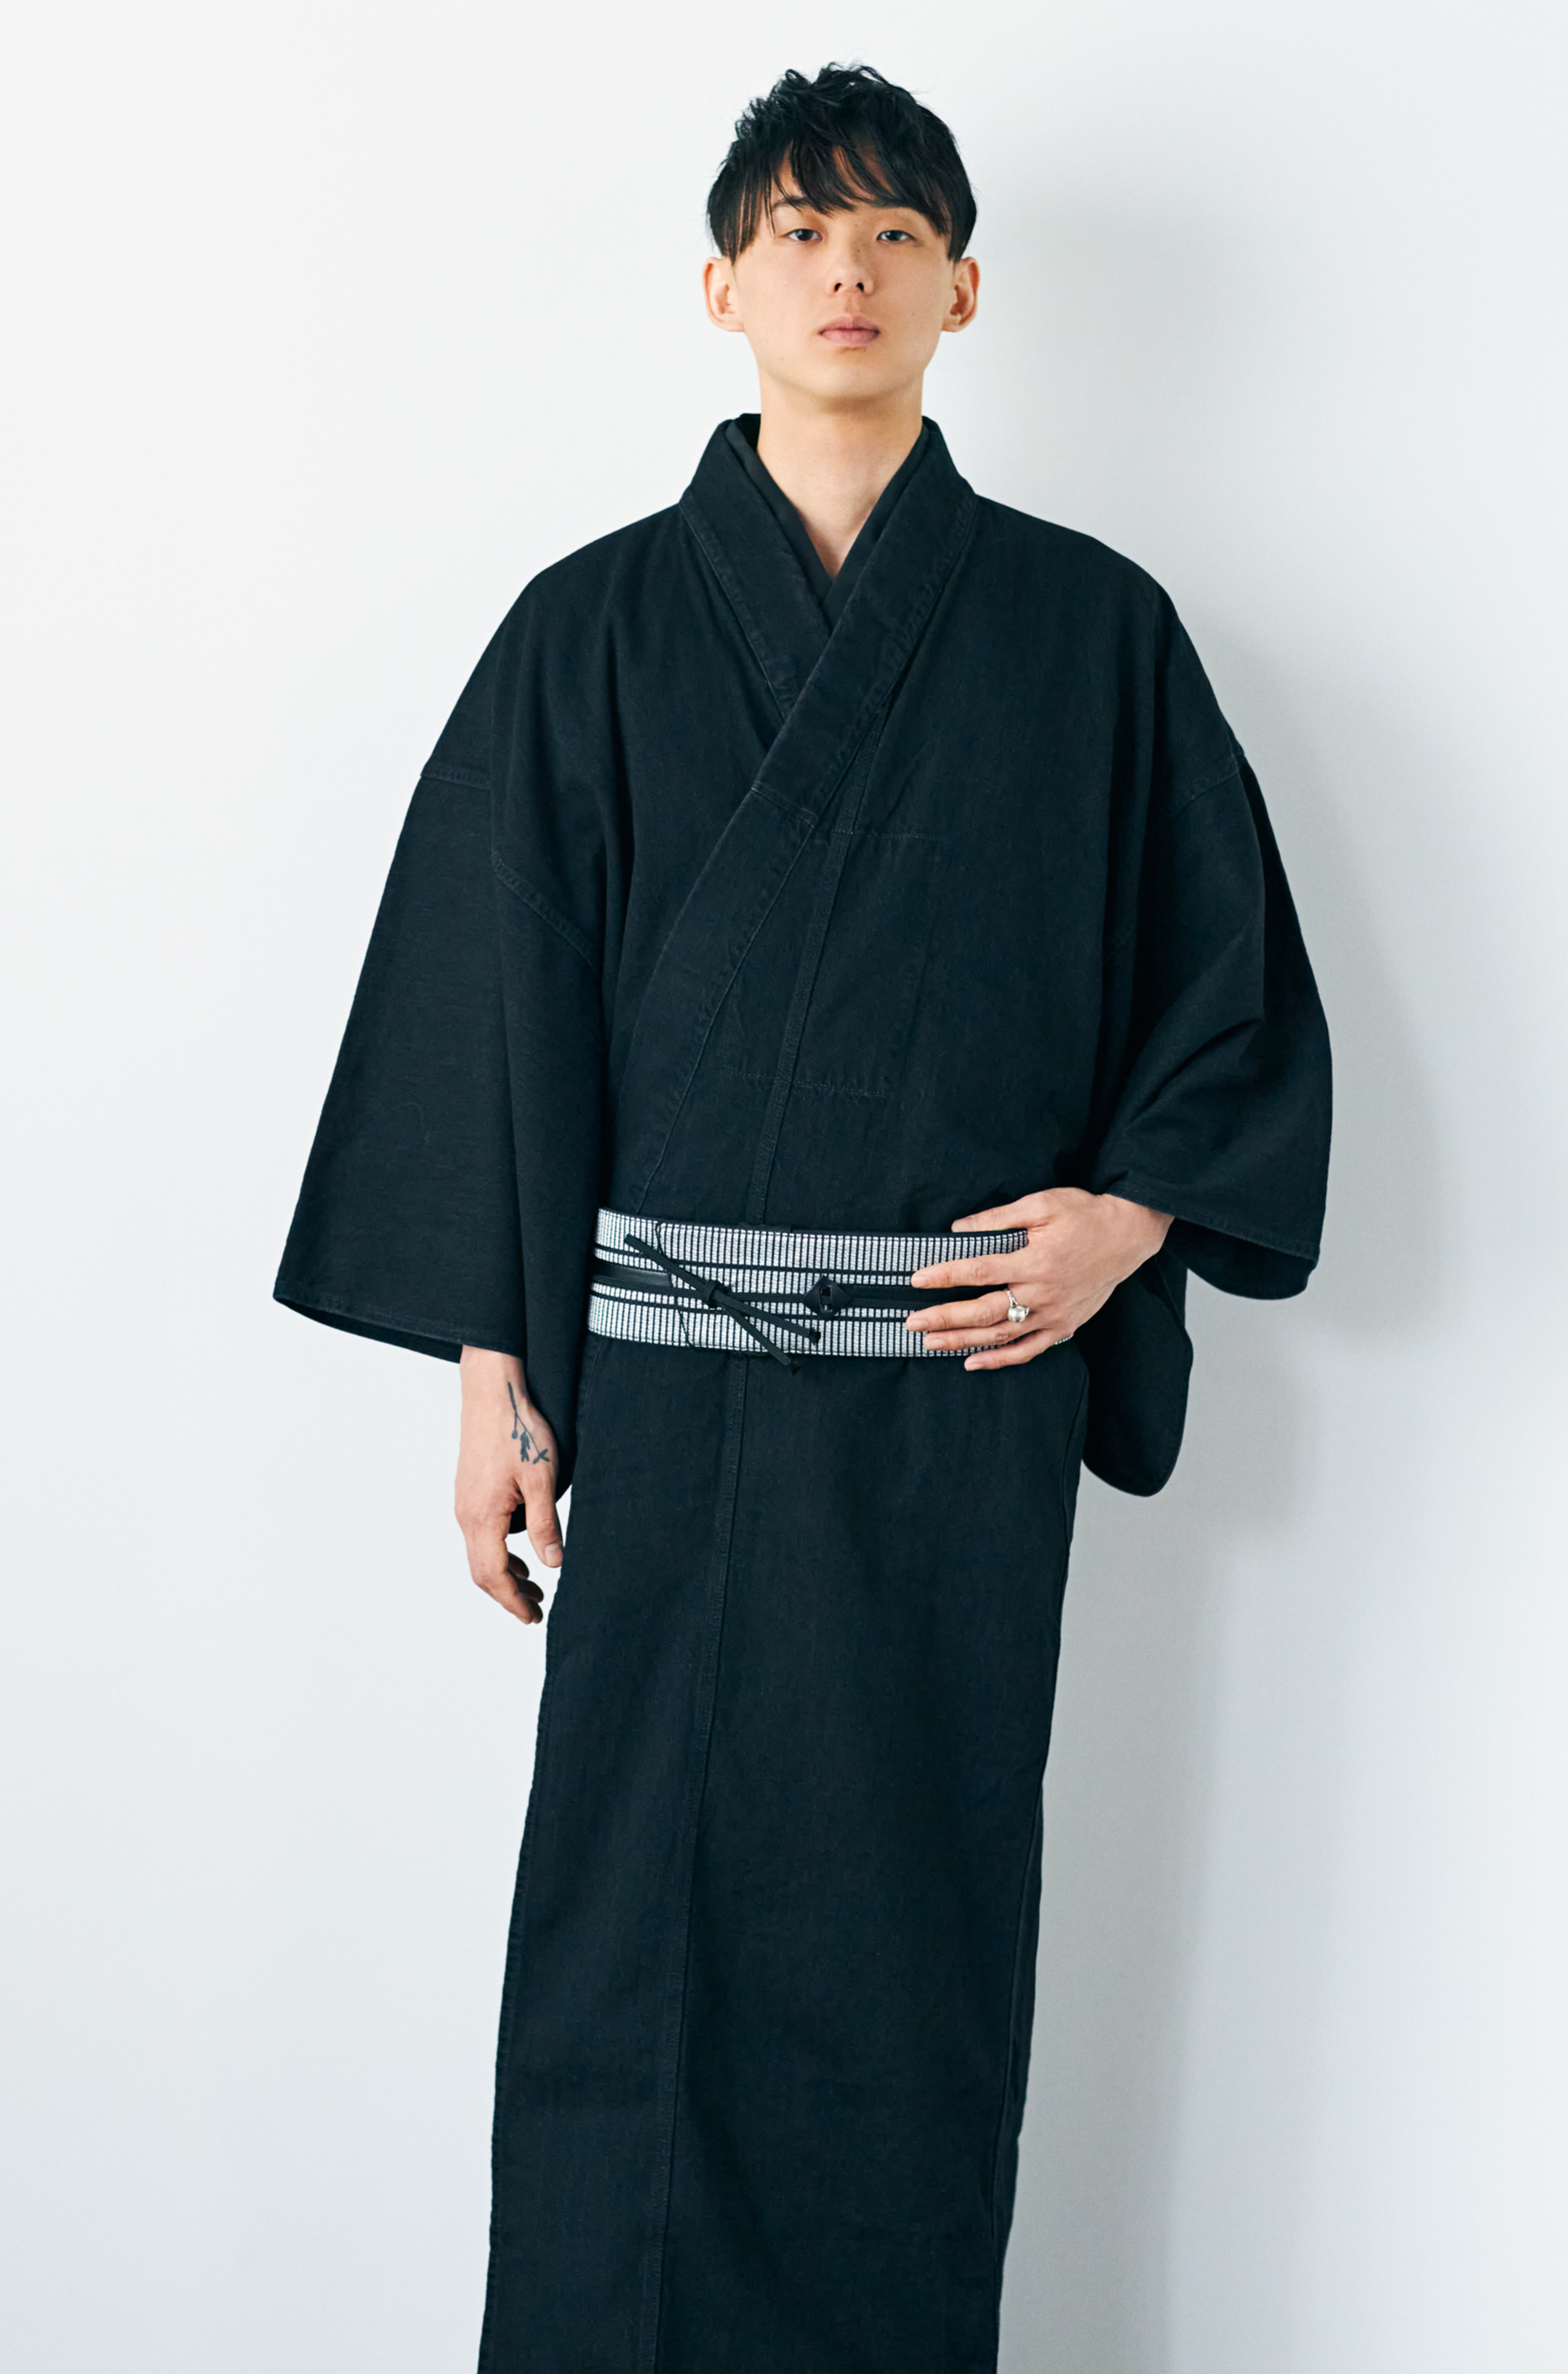 KAPUKI original denim kimono black men's